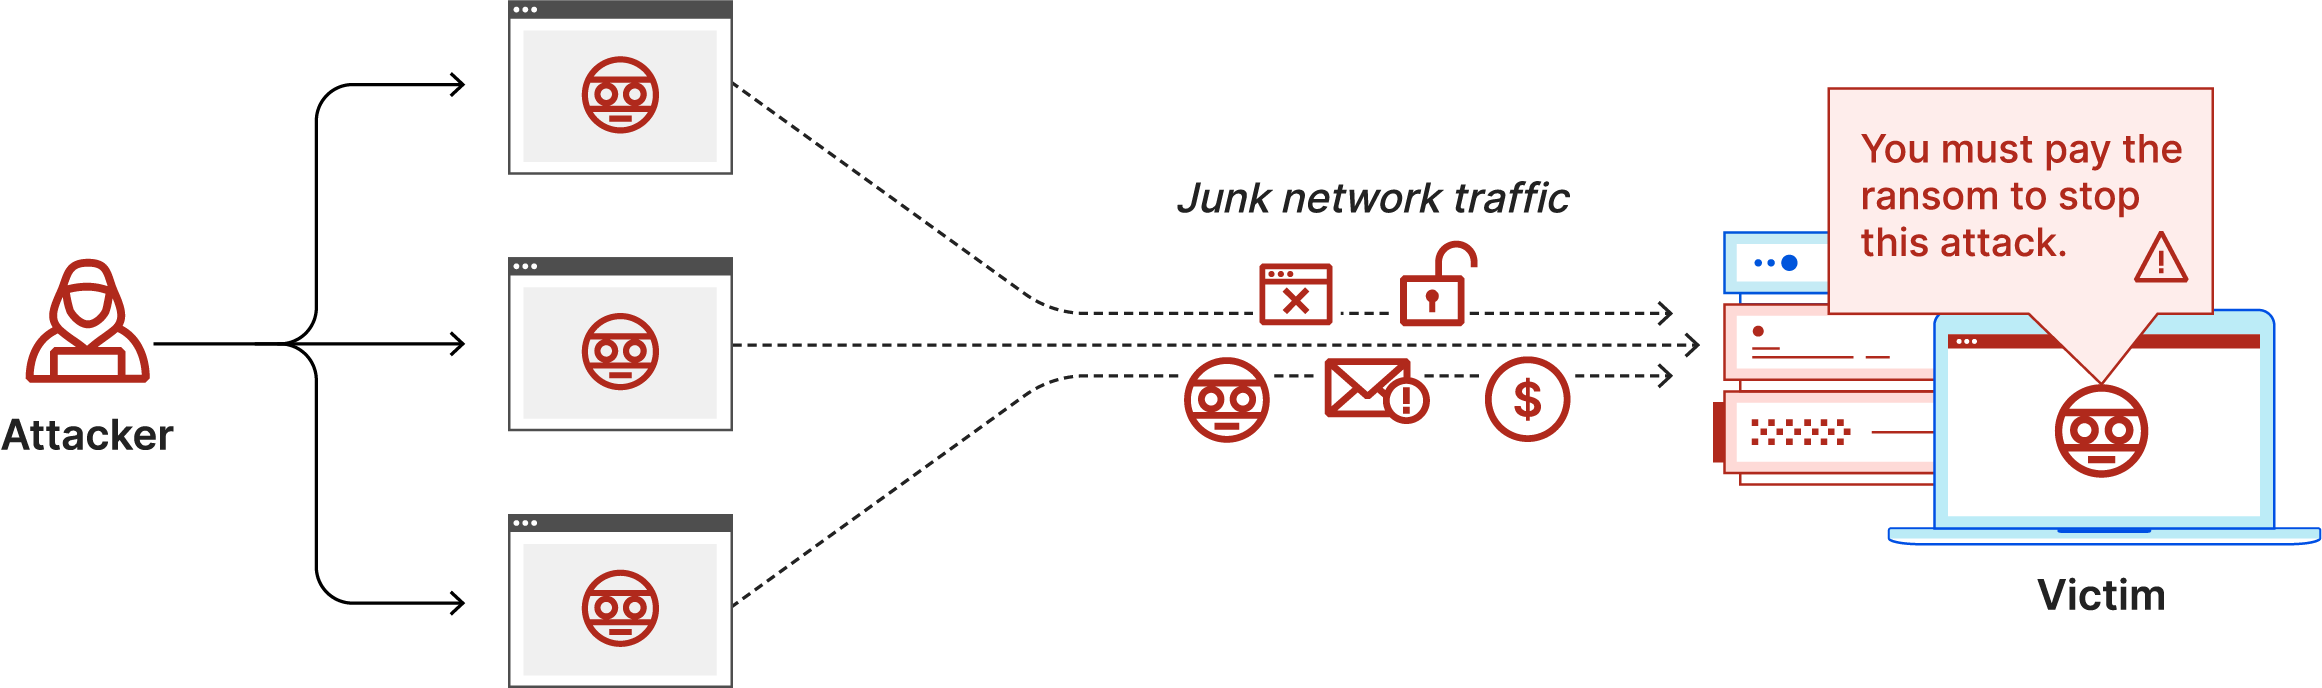 Diagrama de ataque DDoS con rescate: el atacante envía tráfico de red basura y una nota de rescate a la víctima